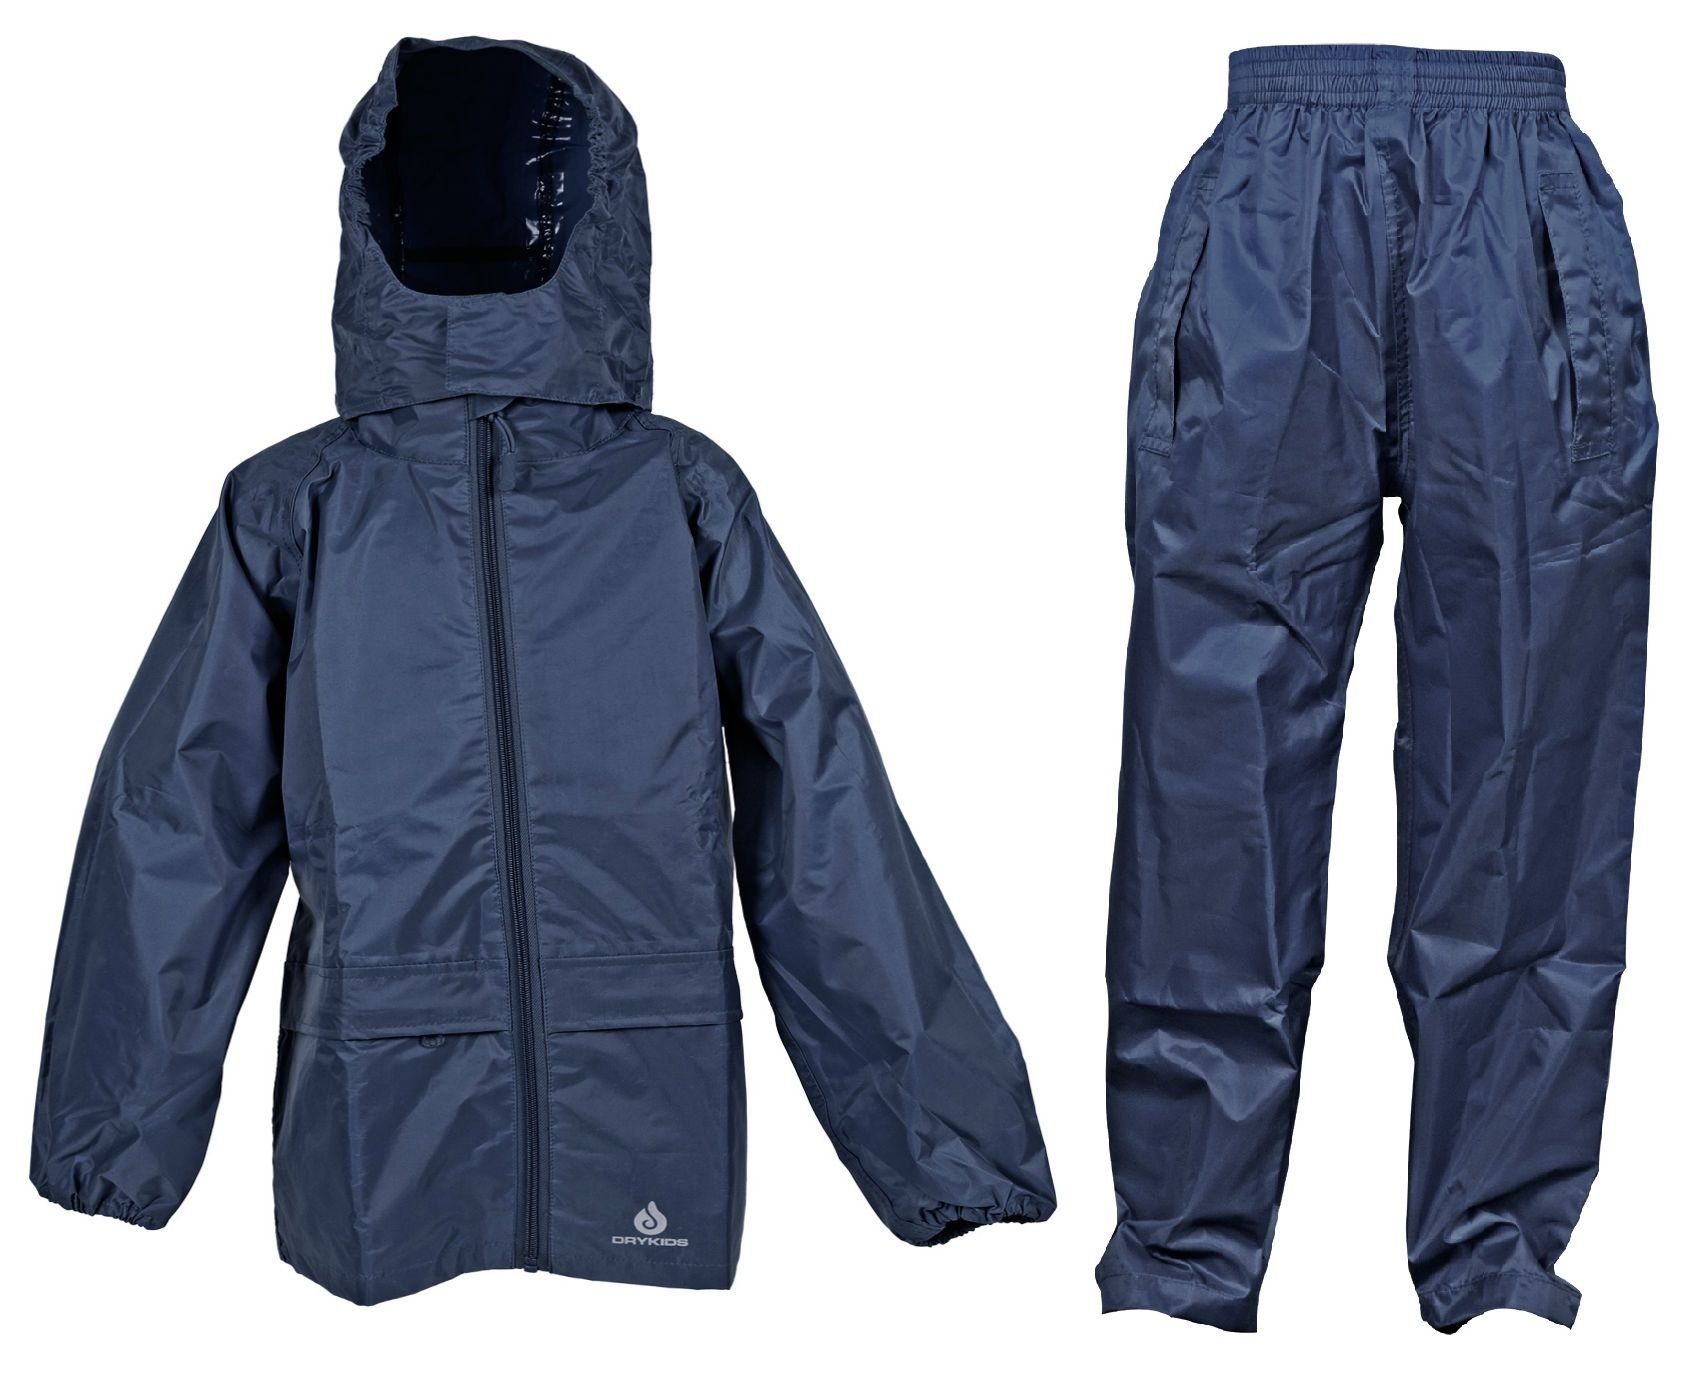 DRY KIDS Regenanzug (1-tlg), Blau Kinder Wasserdichtes Regenanzug-Set, Regenbekleidung reflektierende